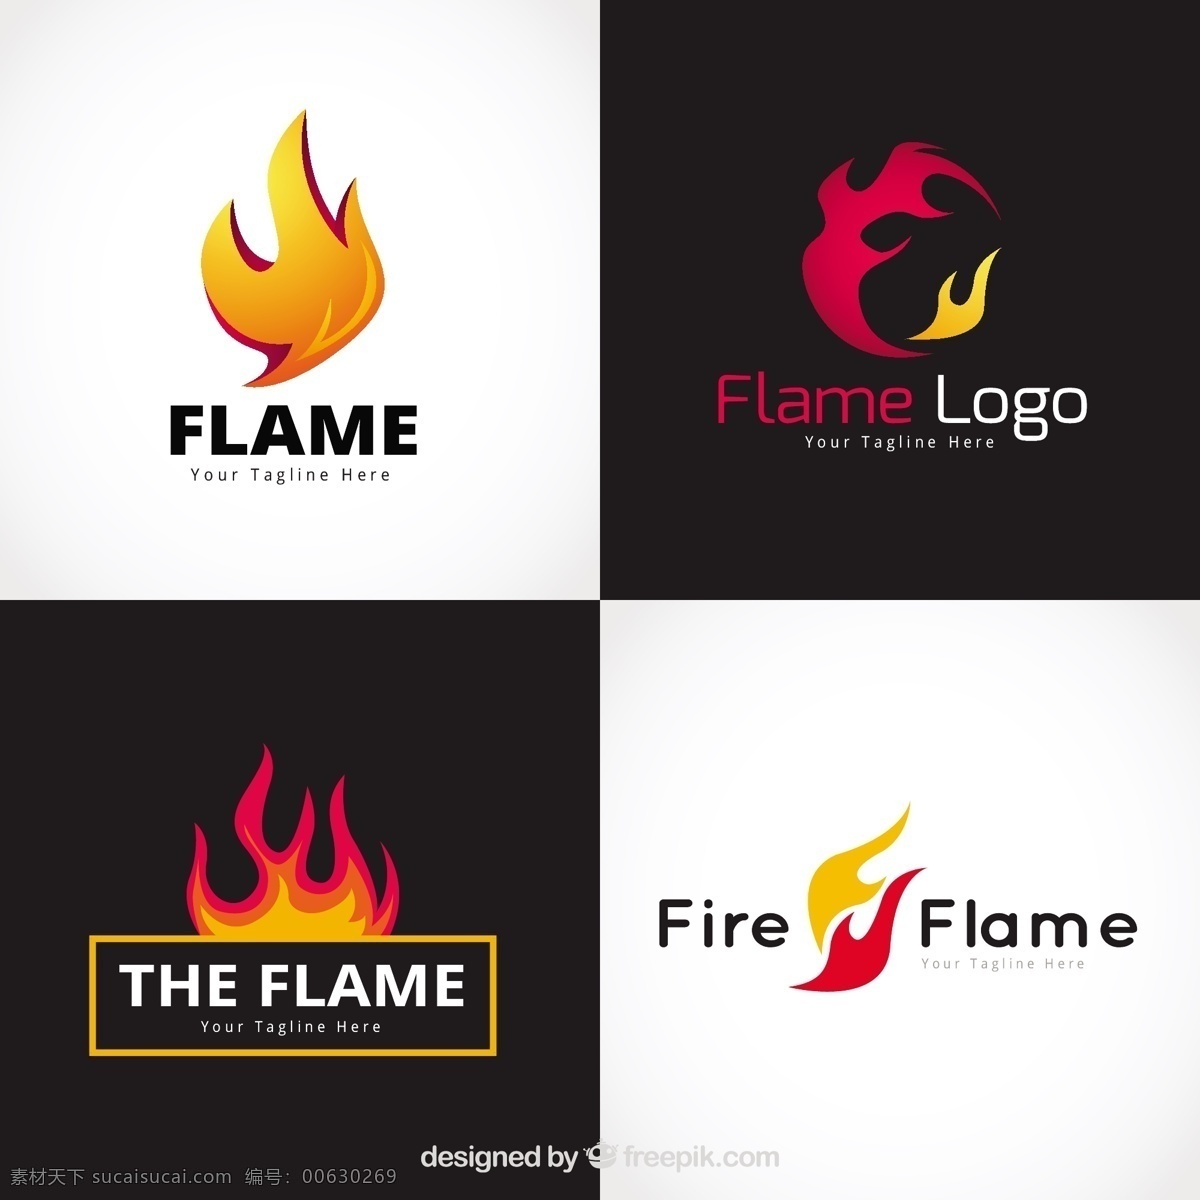 平面设计 中 四 种 火焰 标识 分类 标志 商业 抽象 线条 标签 火灾 色彩 平面 企业 能源 公司 抽象标识 企业标识 品牌 现代 符号